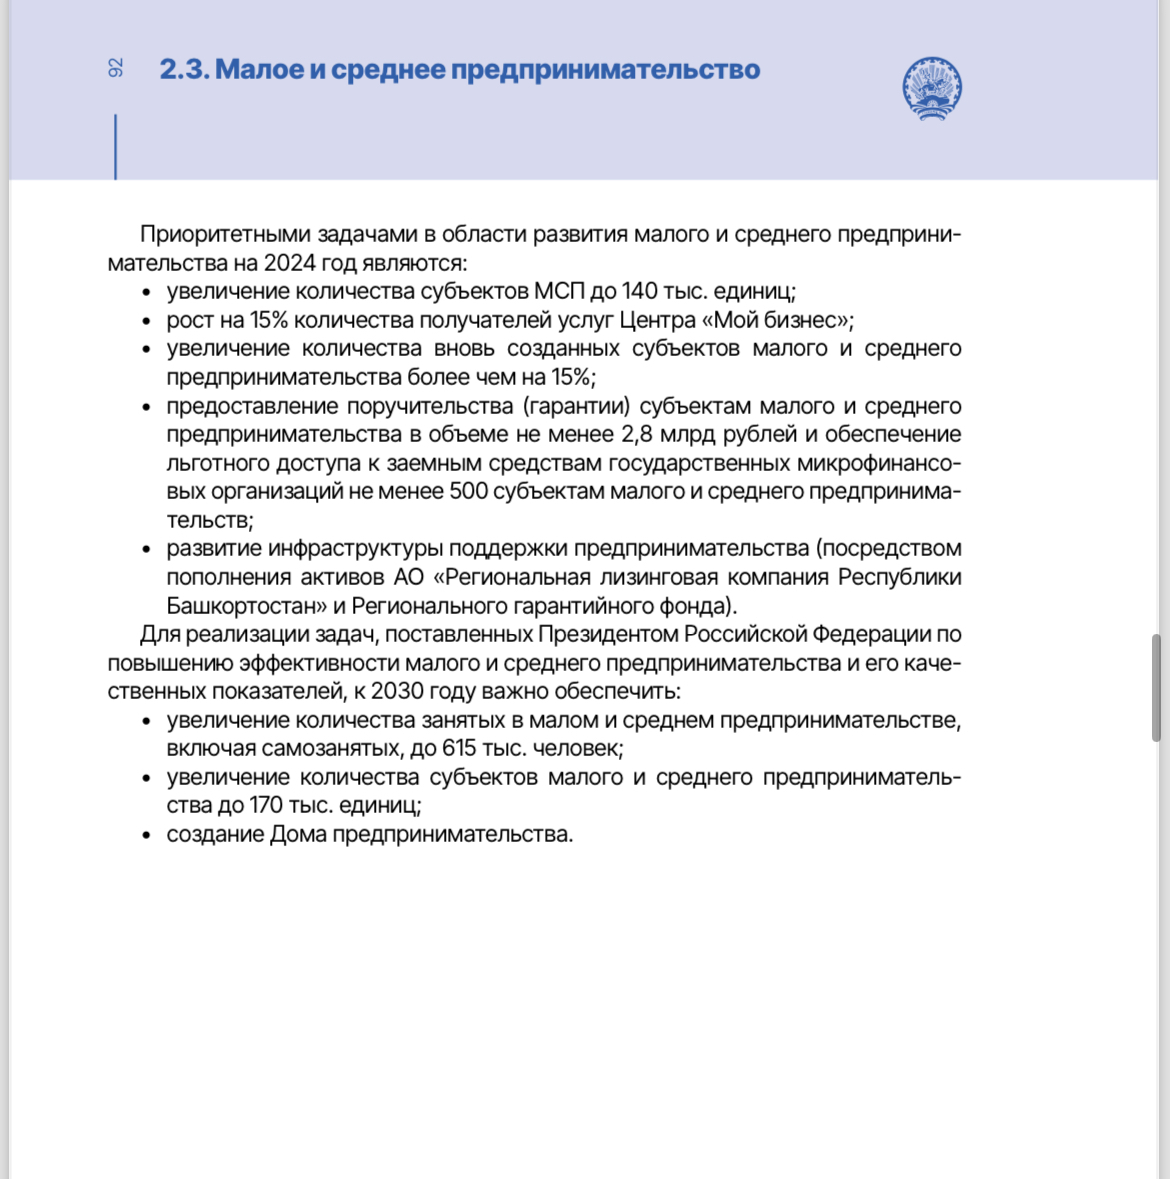 Деятельность Правительства Республики Башкортостан в период с 2019 по 2023 год в сфере развития малого и среднего предпринимательства